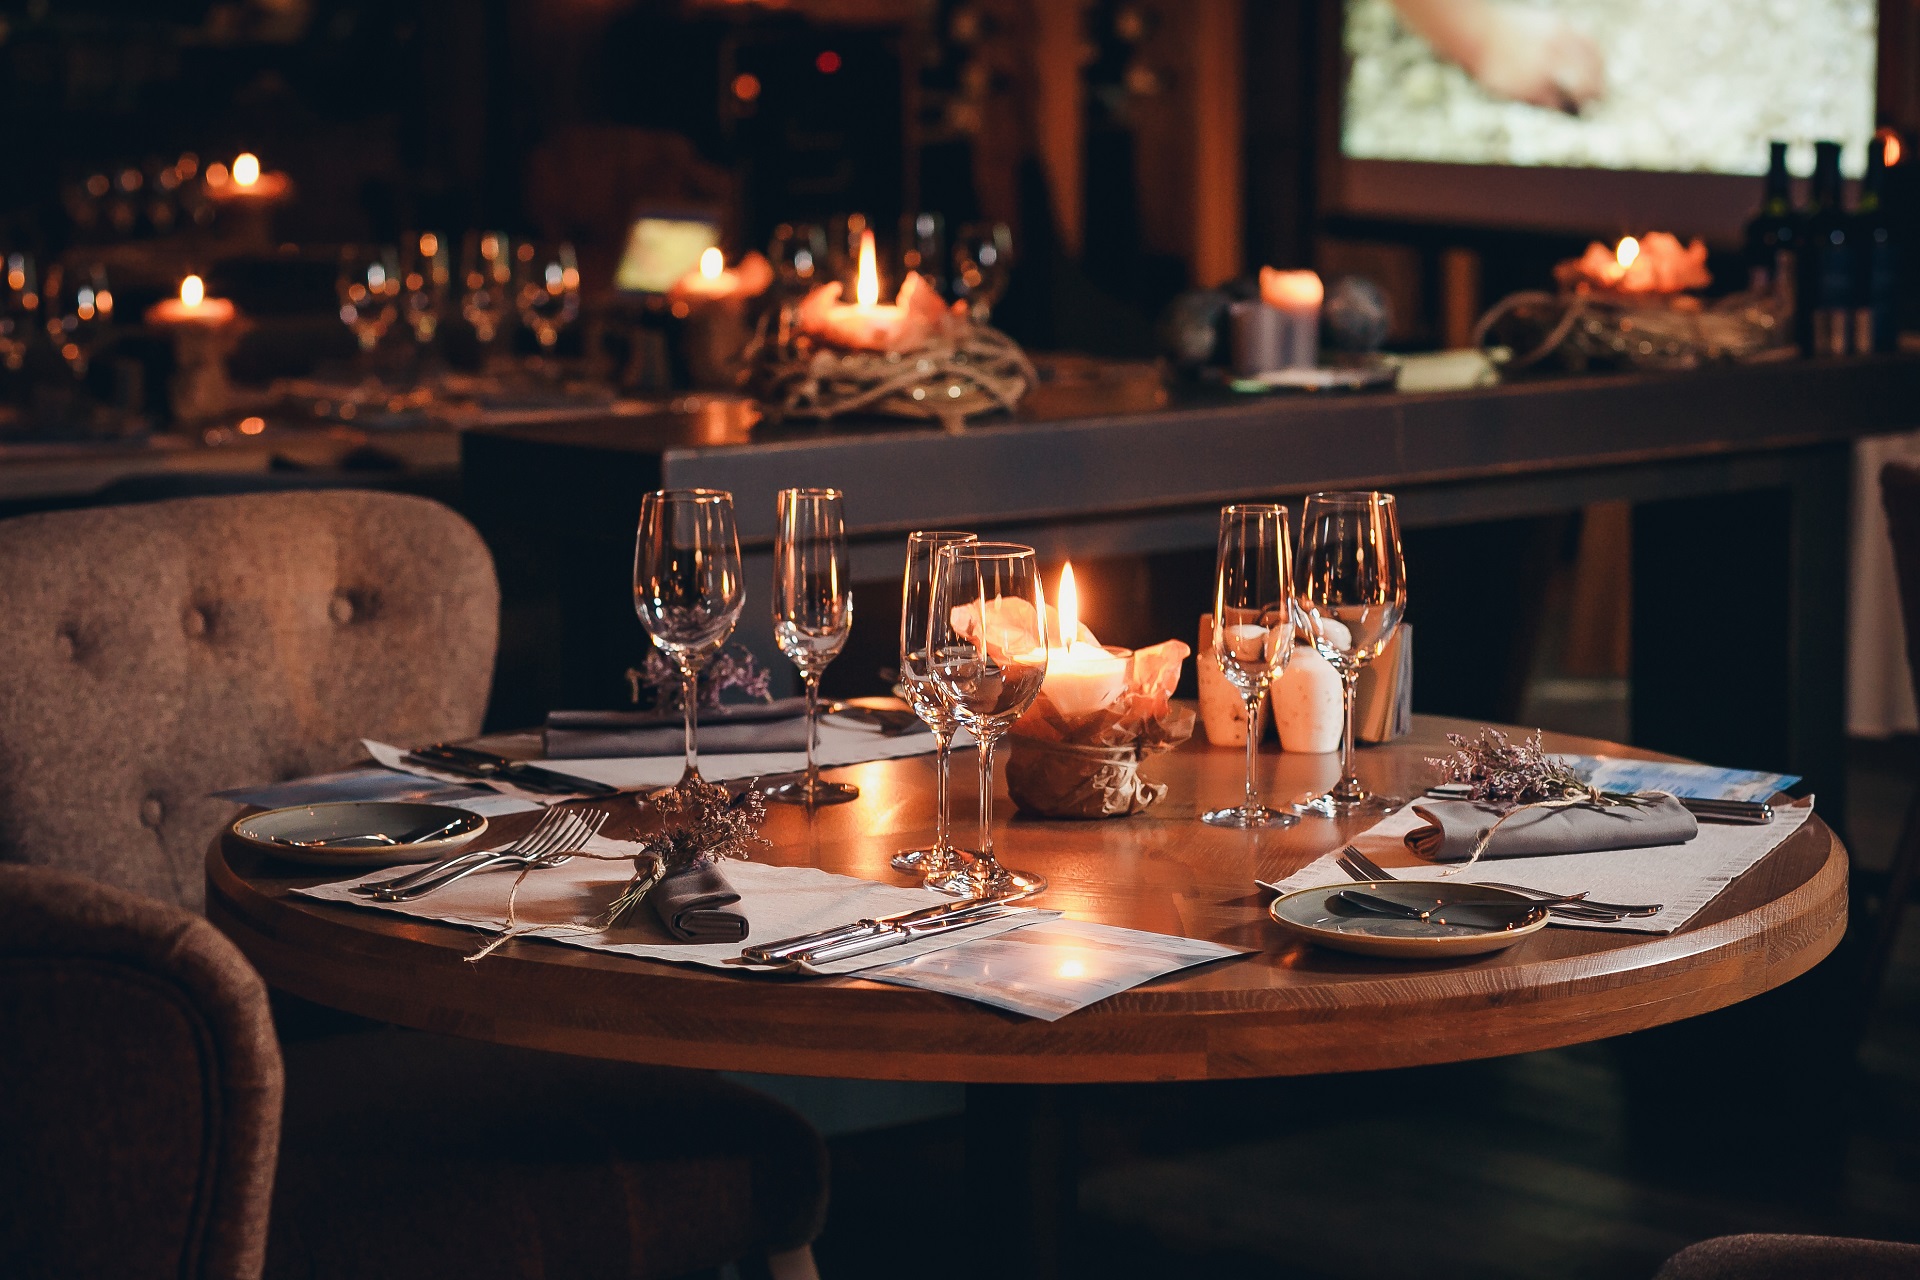 Eingedeckter Tisch im Restaurant oder Hotel - Optimierung für Gastronomie-Webseiten